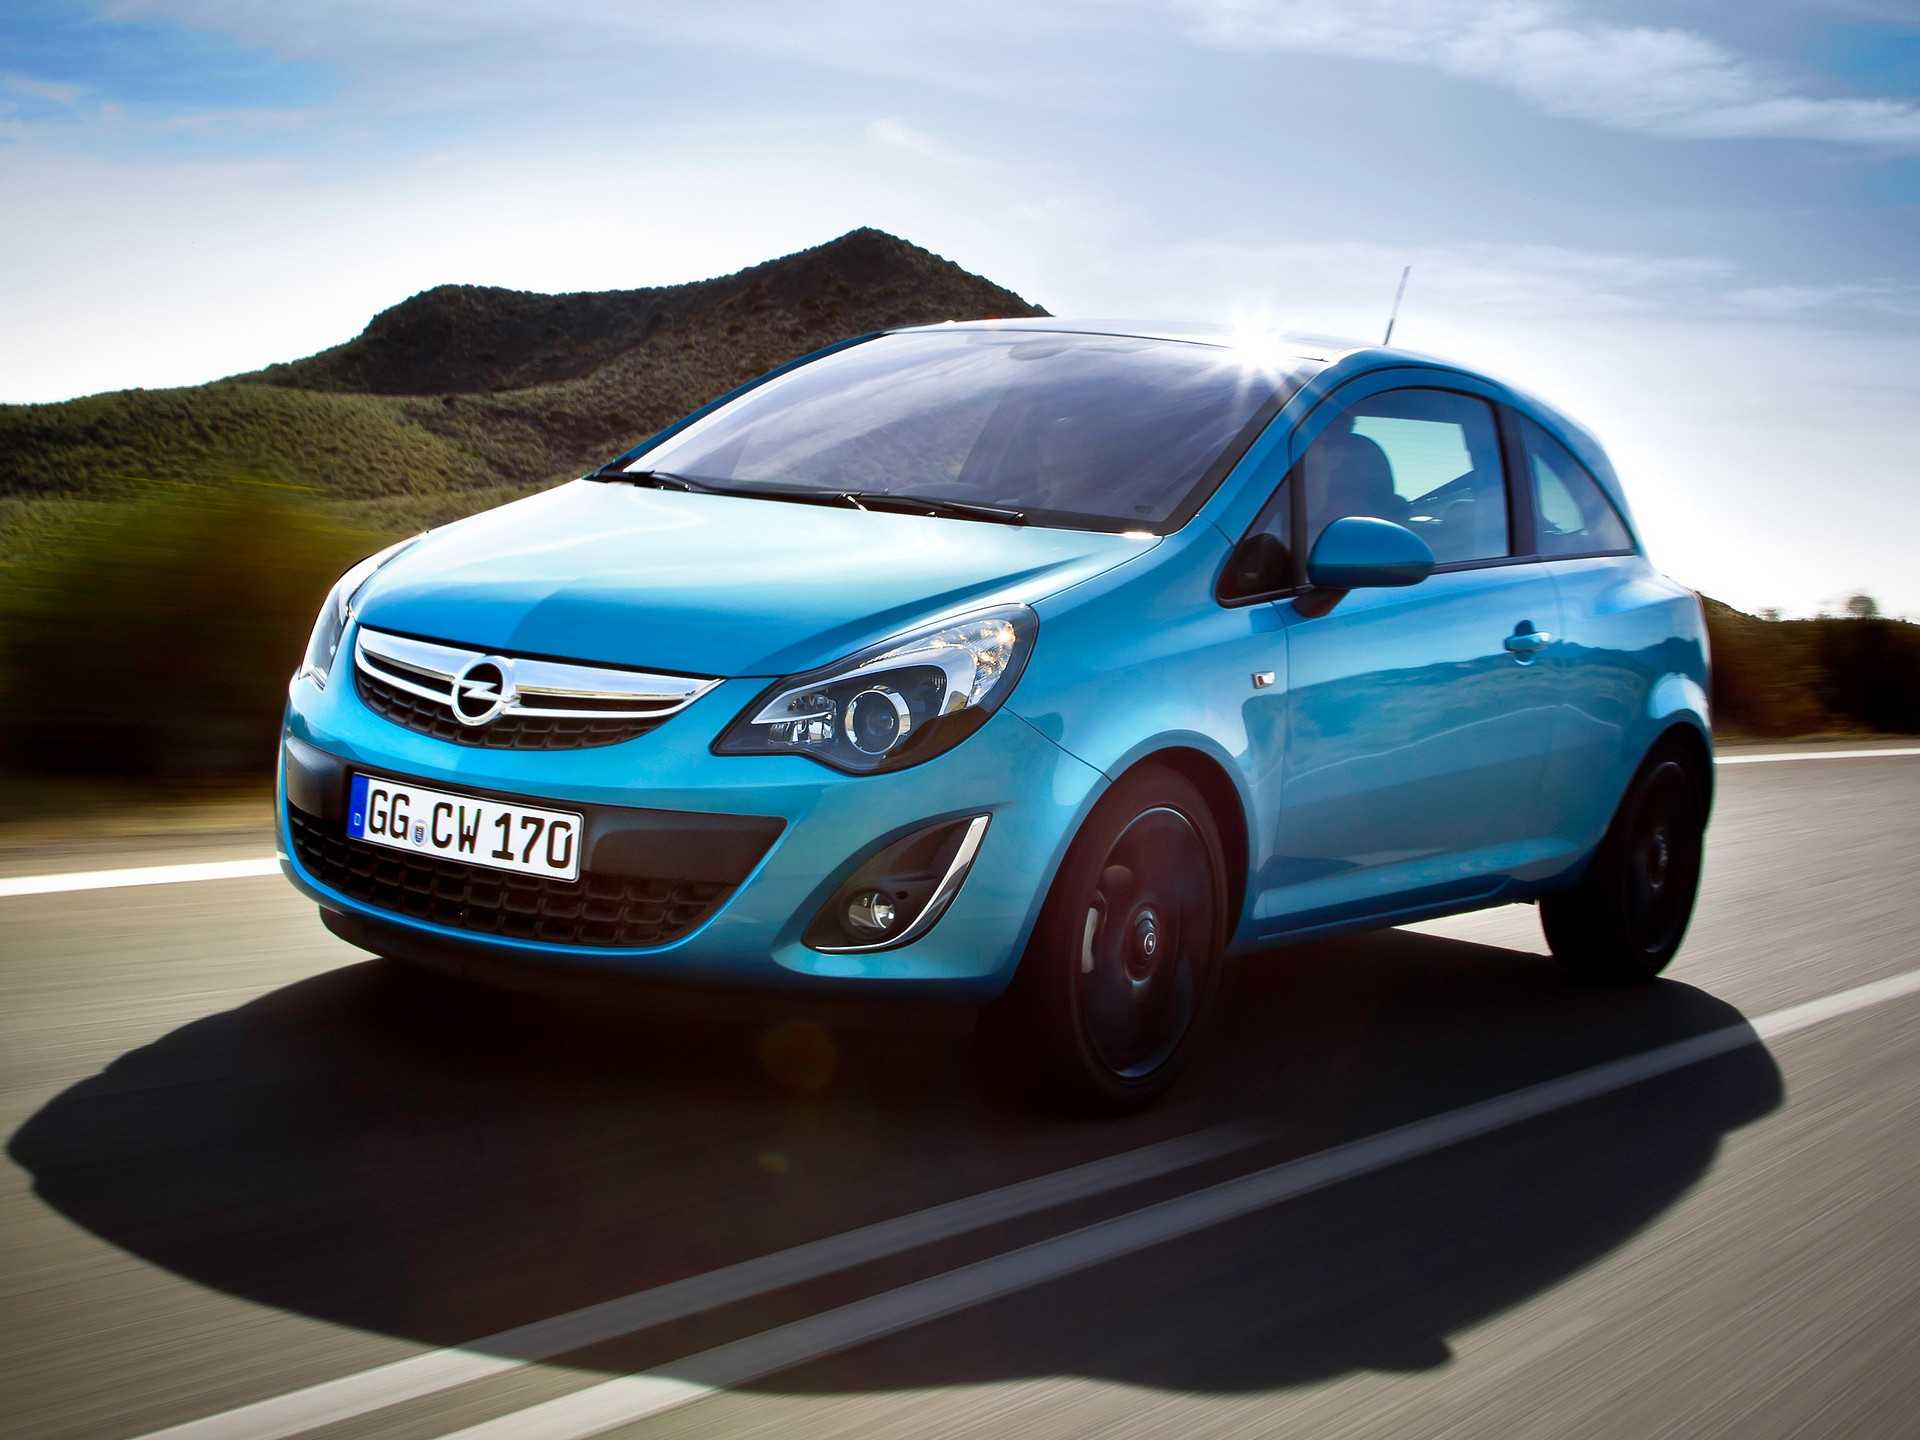 Версии Opel Corsa двигатели и связанные с ними проблемы неисправности трансмиссии и электрической части подвеска кузов отзывы владельцев